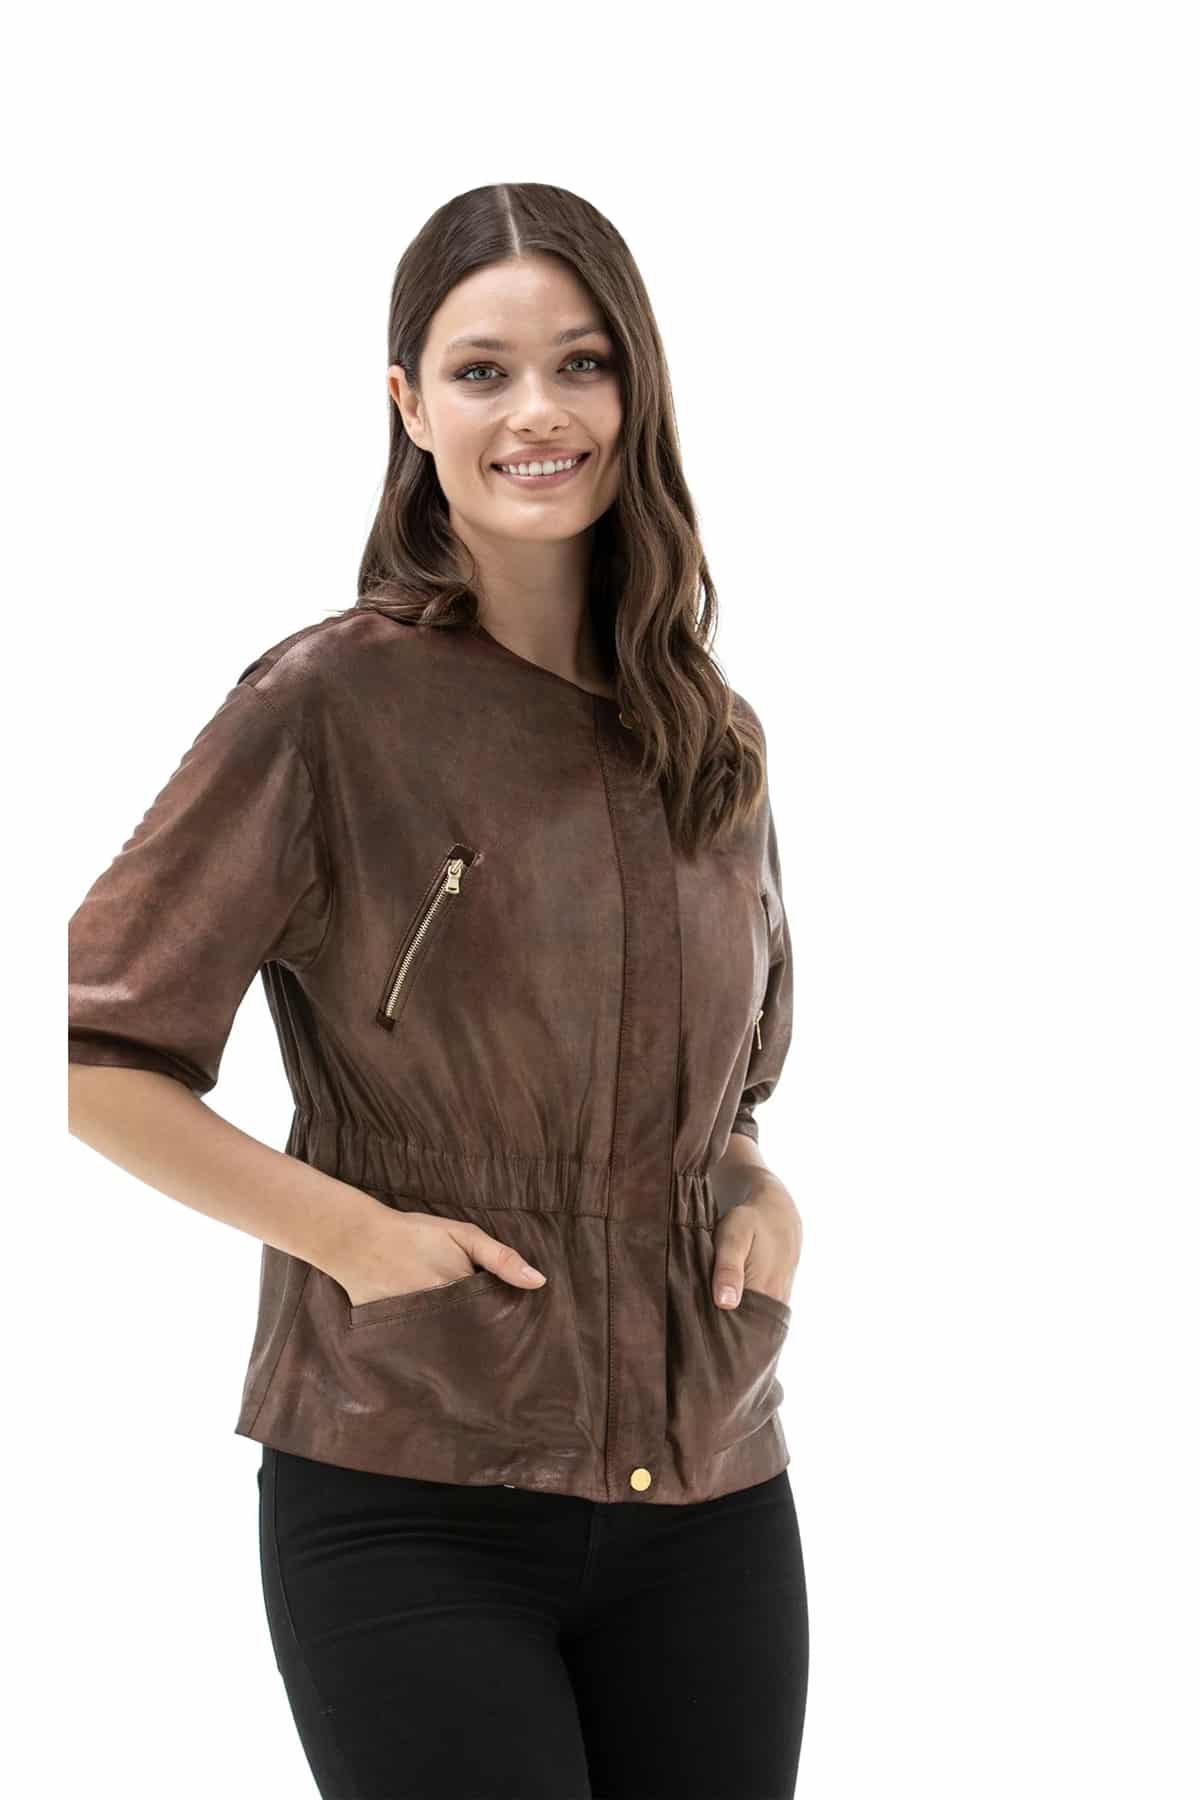 Buy Half Sleeve Solid Women Jacket online | Looksgud.in-thanhphatduhoc.com.vn